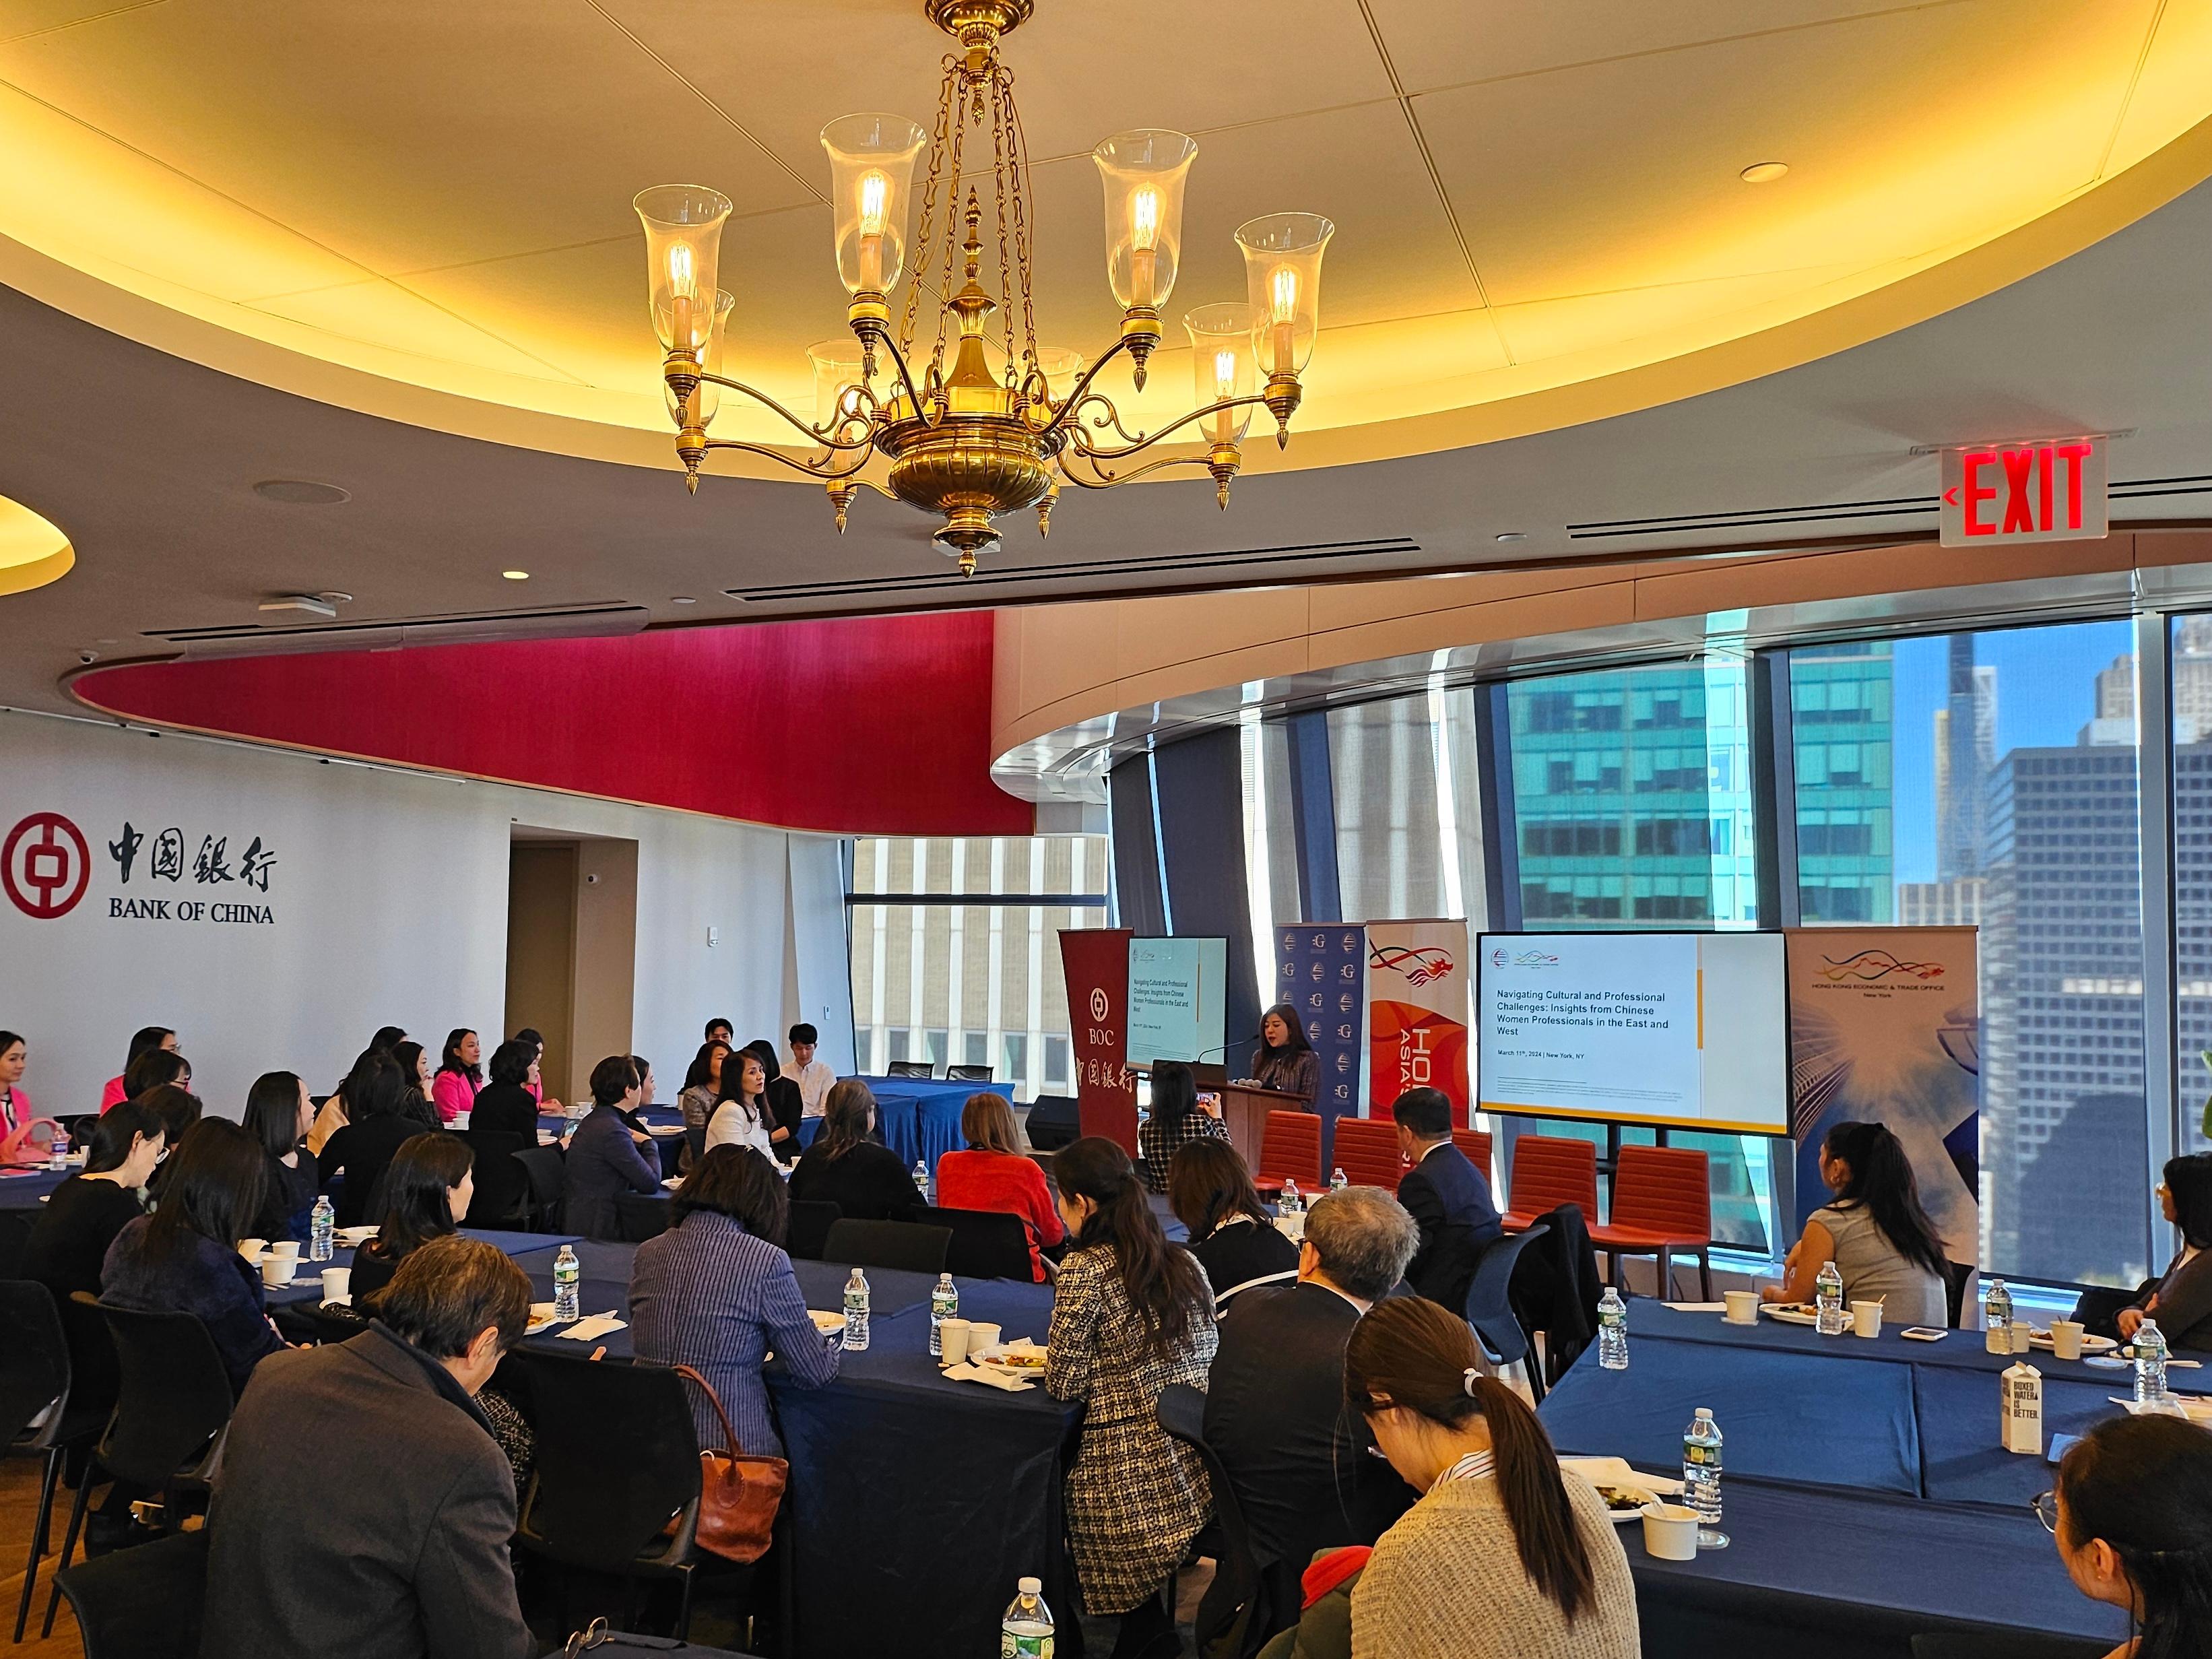 適逢聯合國婦女地位委員會舉行第68屆會議，香港駐紐約經濟貿易辦事處三月十一日（紐約時間）與美國中國總商會合辦以「應對文化與專業挑戰：東西方華人專業女性的見解」為主題的午餐會，吸引超過60位來自紐約智庫、商界和金融界的嘉賓參加。